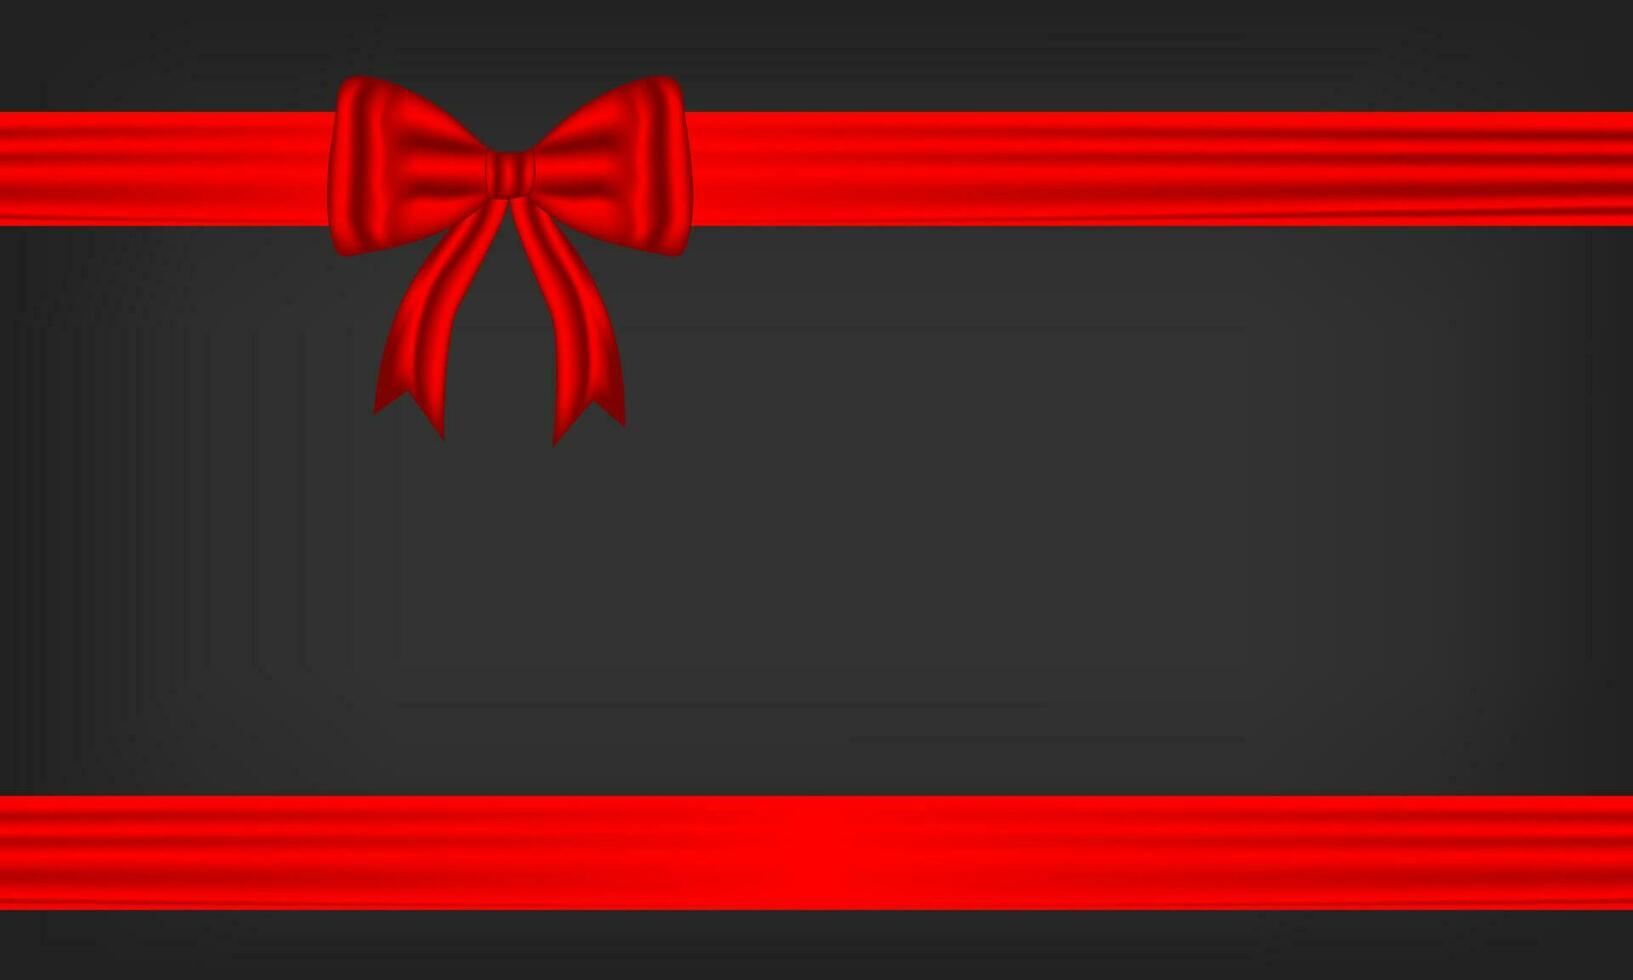 rojo arco y seda lujo elementos con horizontal y vertical cruzar cinta festivo decoración para fiesta elegante regalo tarjeta cinta para decorando Boda tarjetas, o sitio web vector